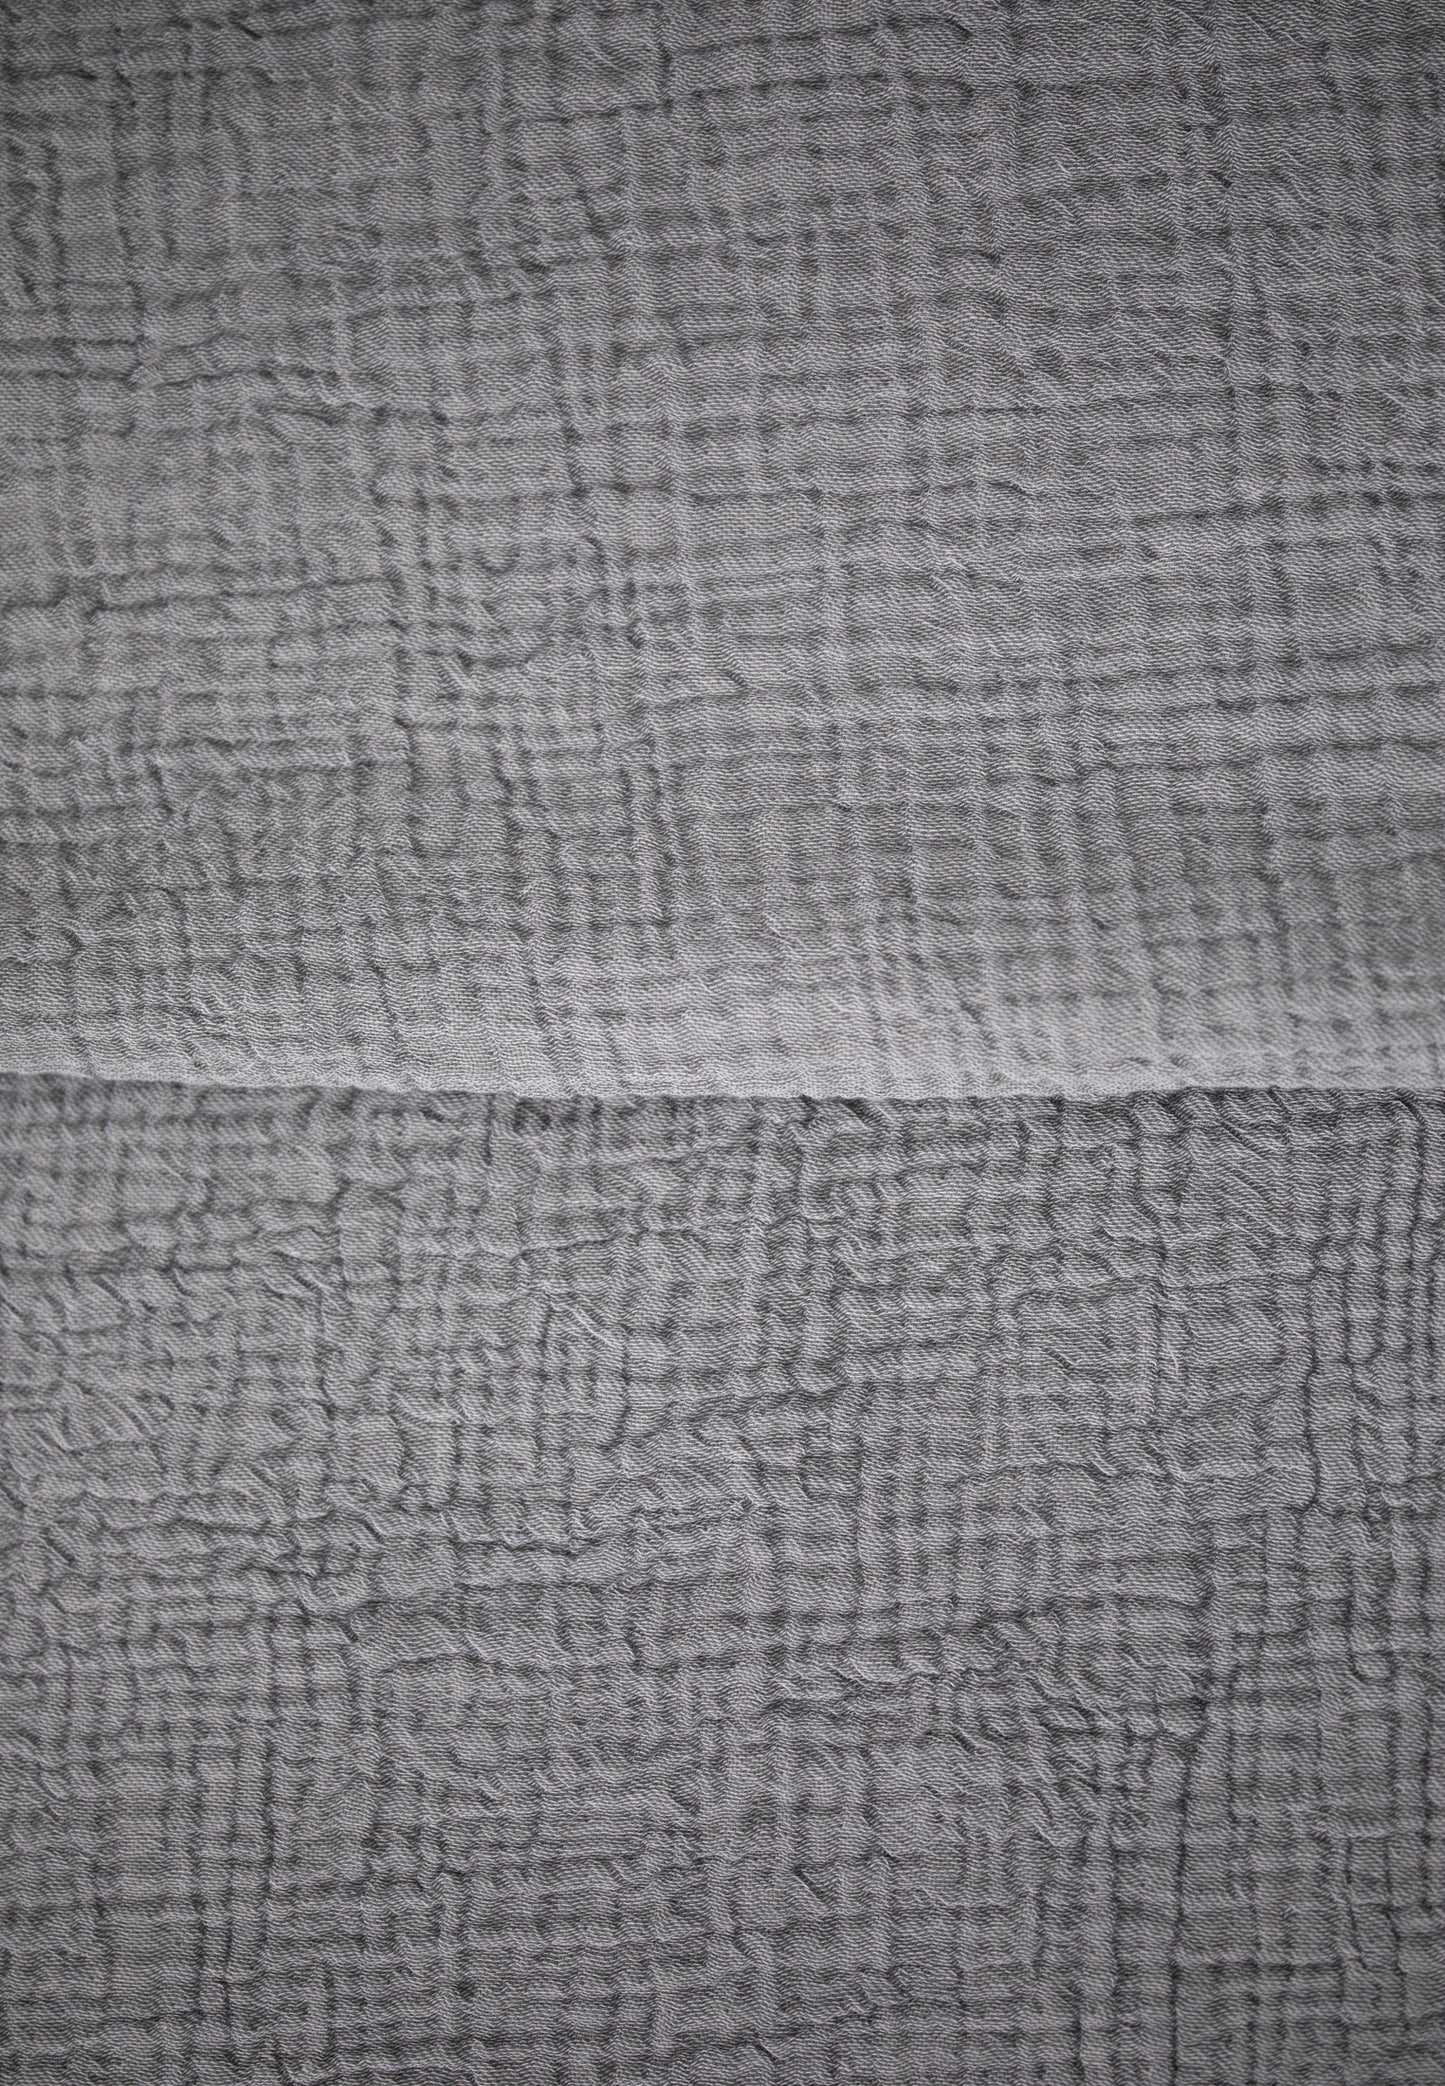 Premium Musselin Tagesdecke 240x260 cm - 100% Baumwolle - extraweiche Baumwolldecke als Kuscheldecke, Bett-Überwurf, Sofa-Überwurf, Couch-Überwurf - warme Sofa-Decke LMS-6481 (Grün)